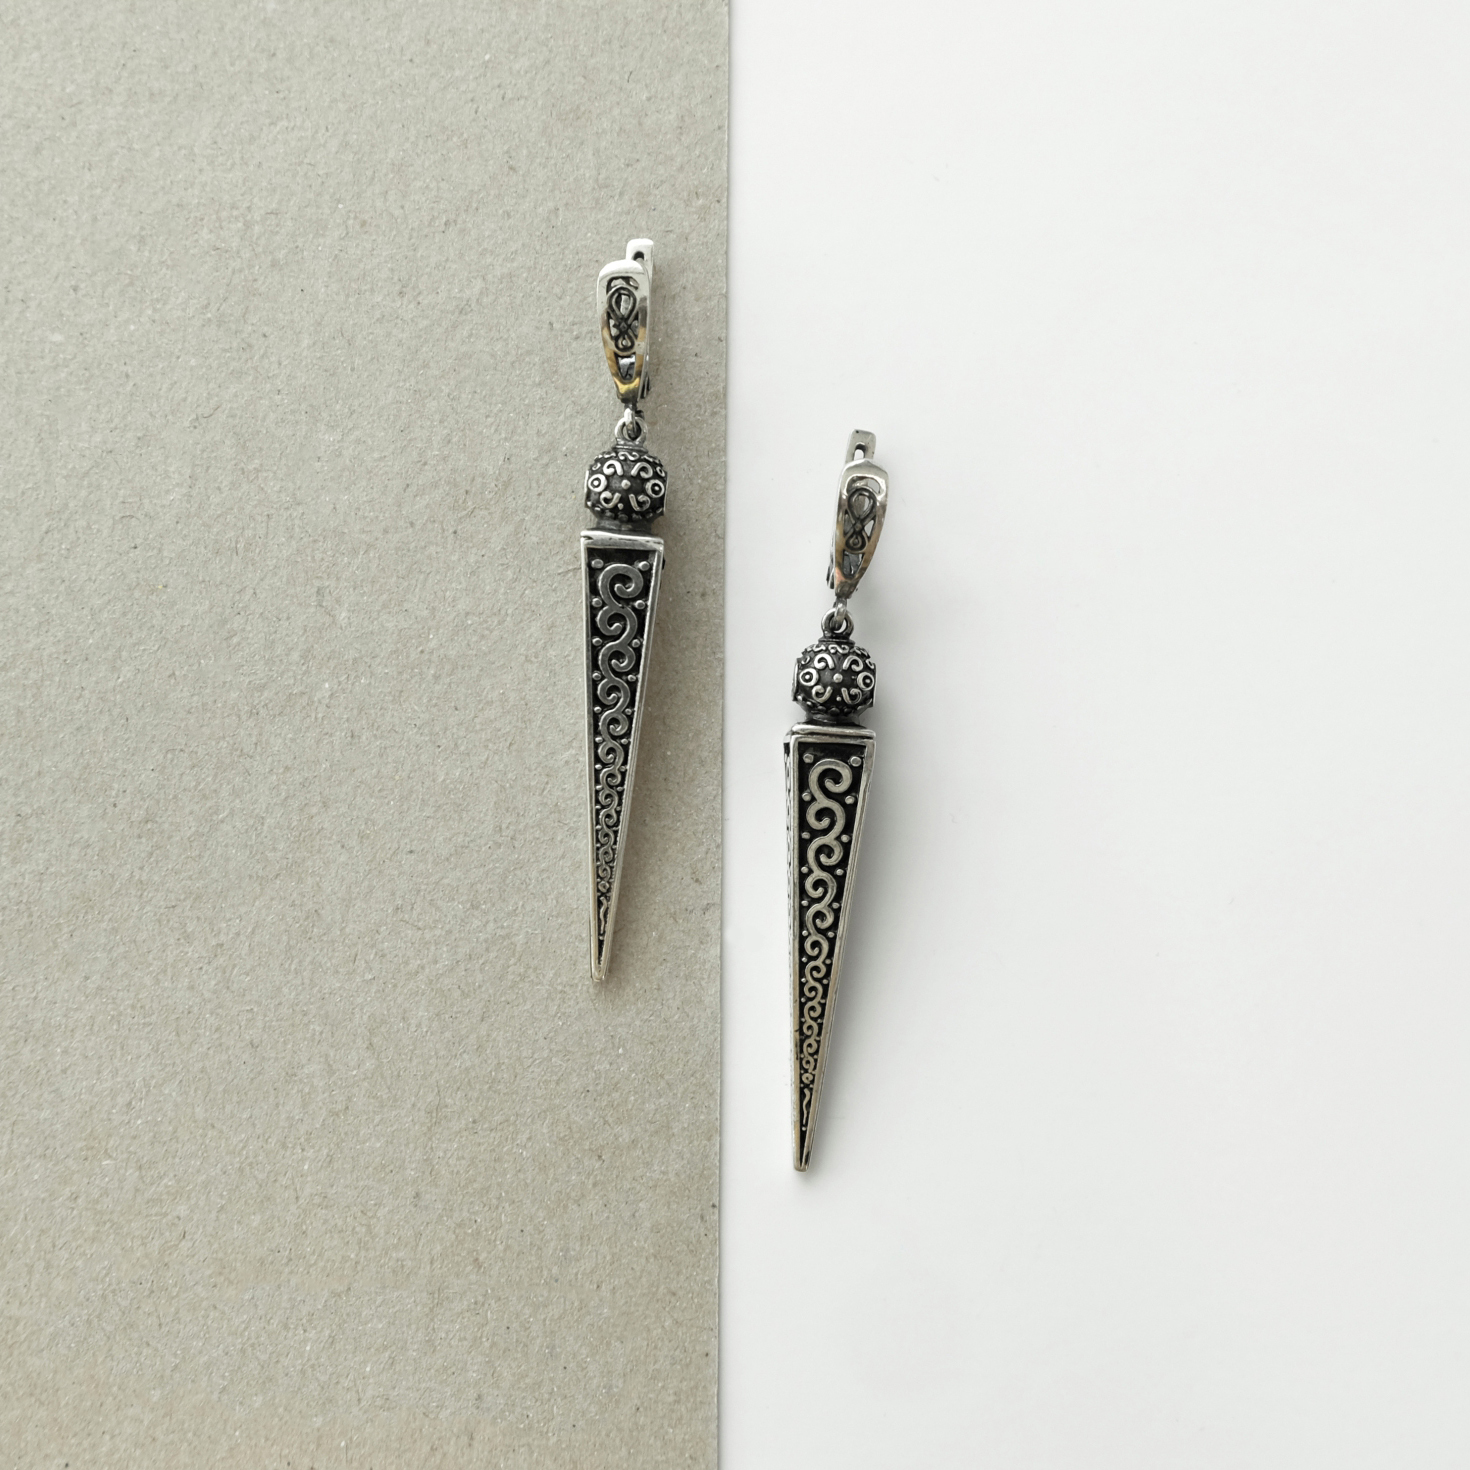 611-silver-earrings-by-koriz-1.jpg